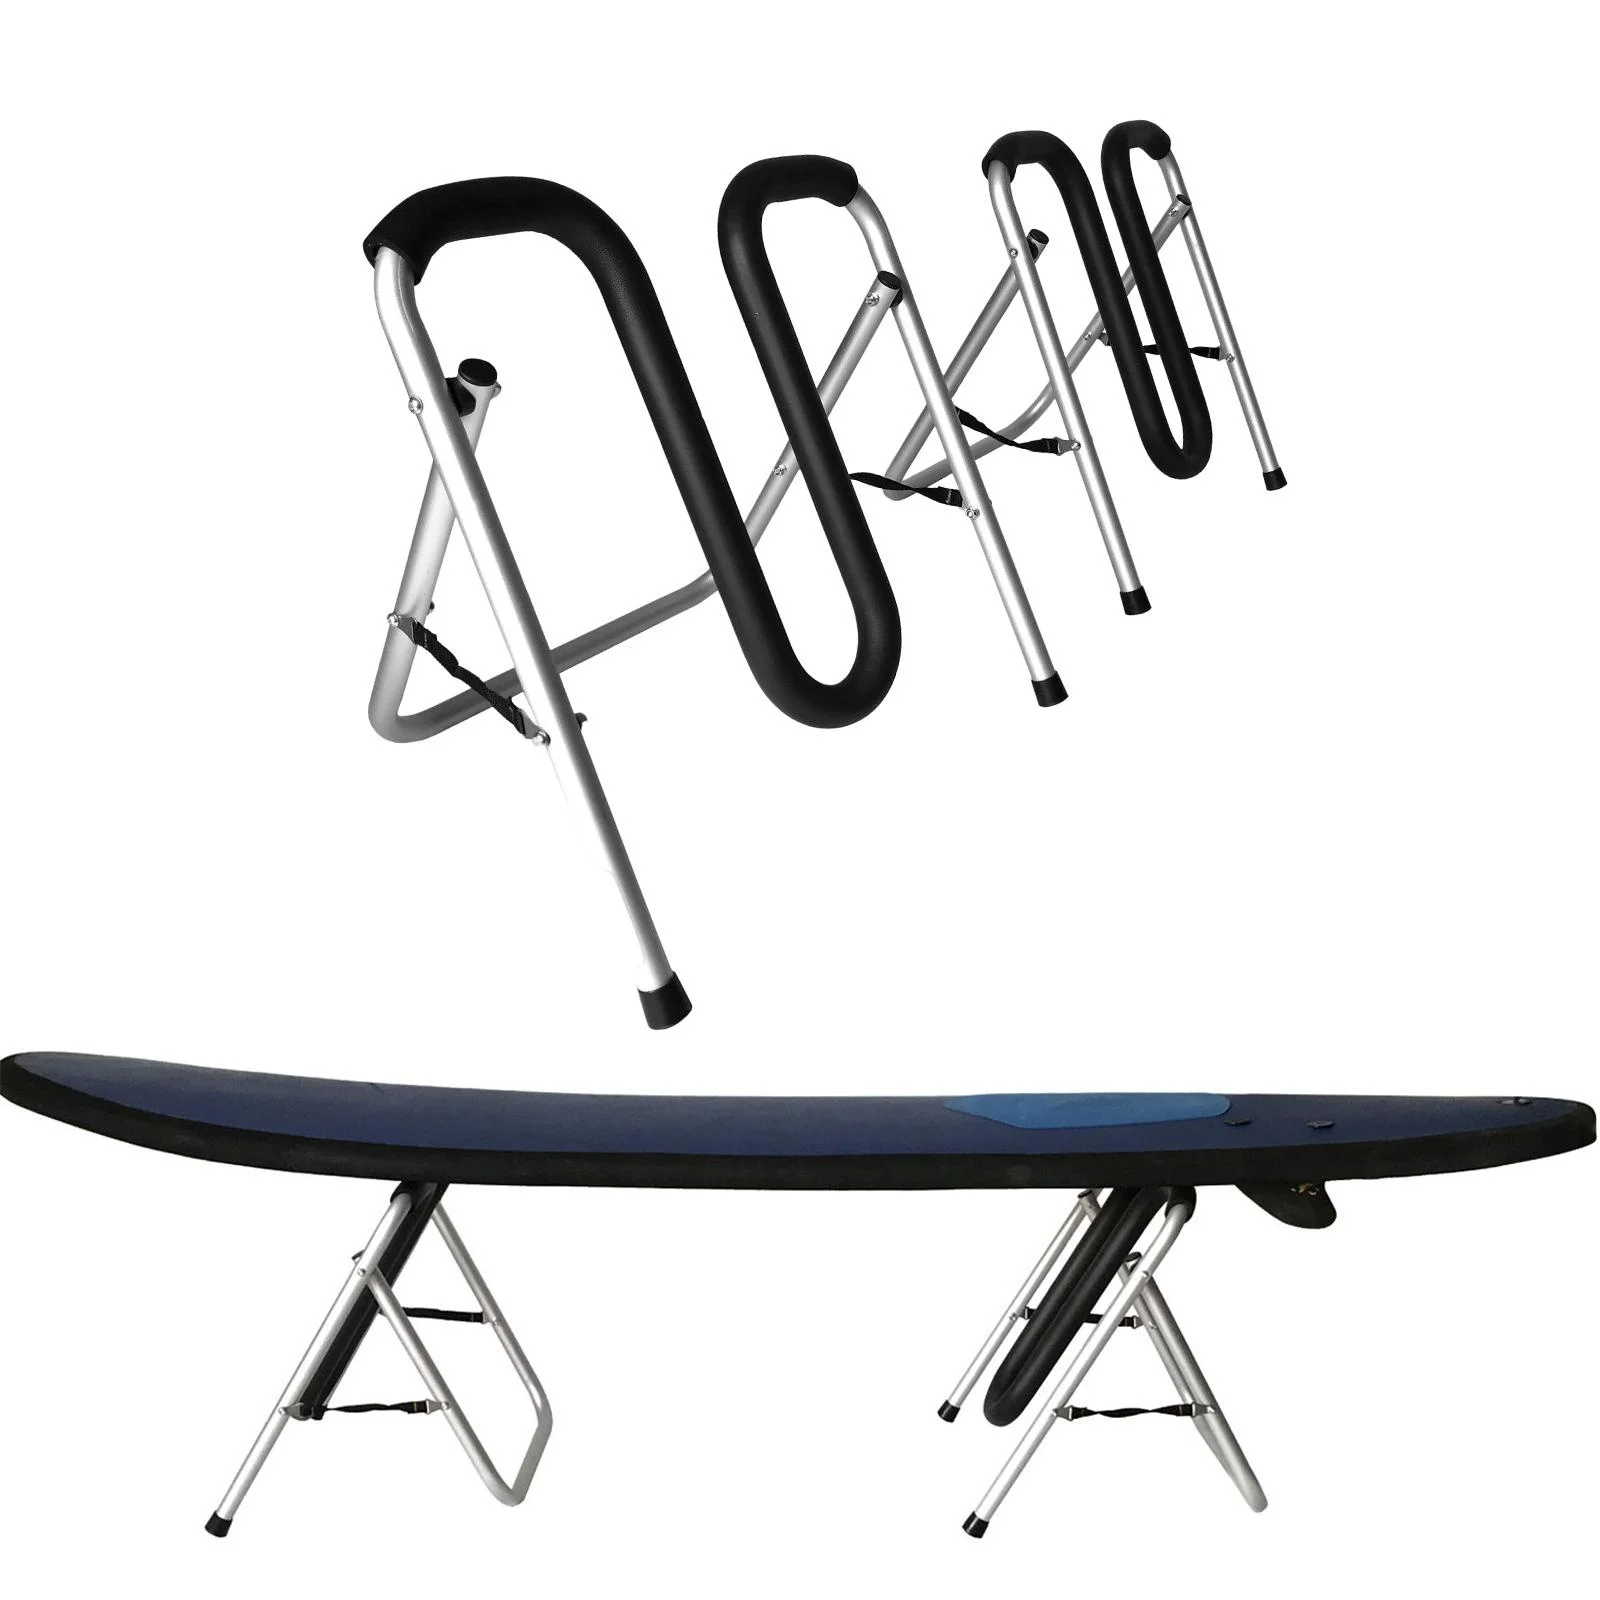 

Складная подставка для доски для серфинга, стойка для хранения для скейтборда, пенопластовый протектор, подходит для лонгбордов и коротких досок